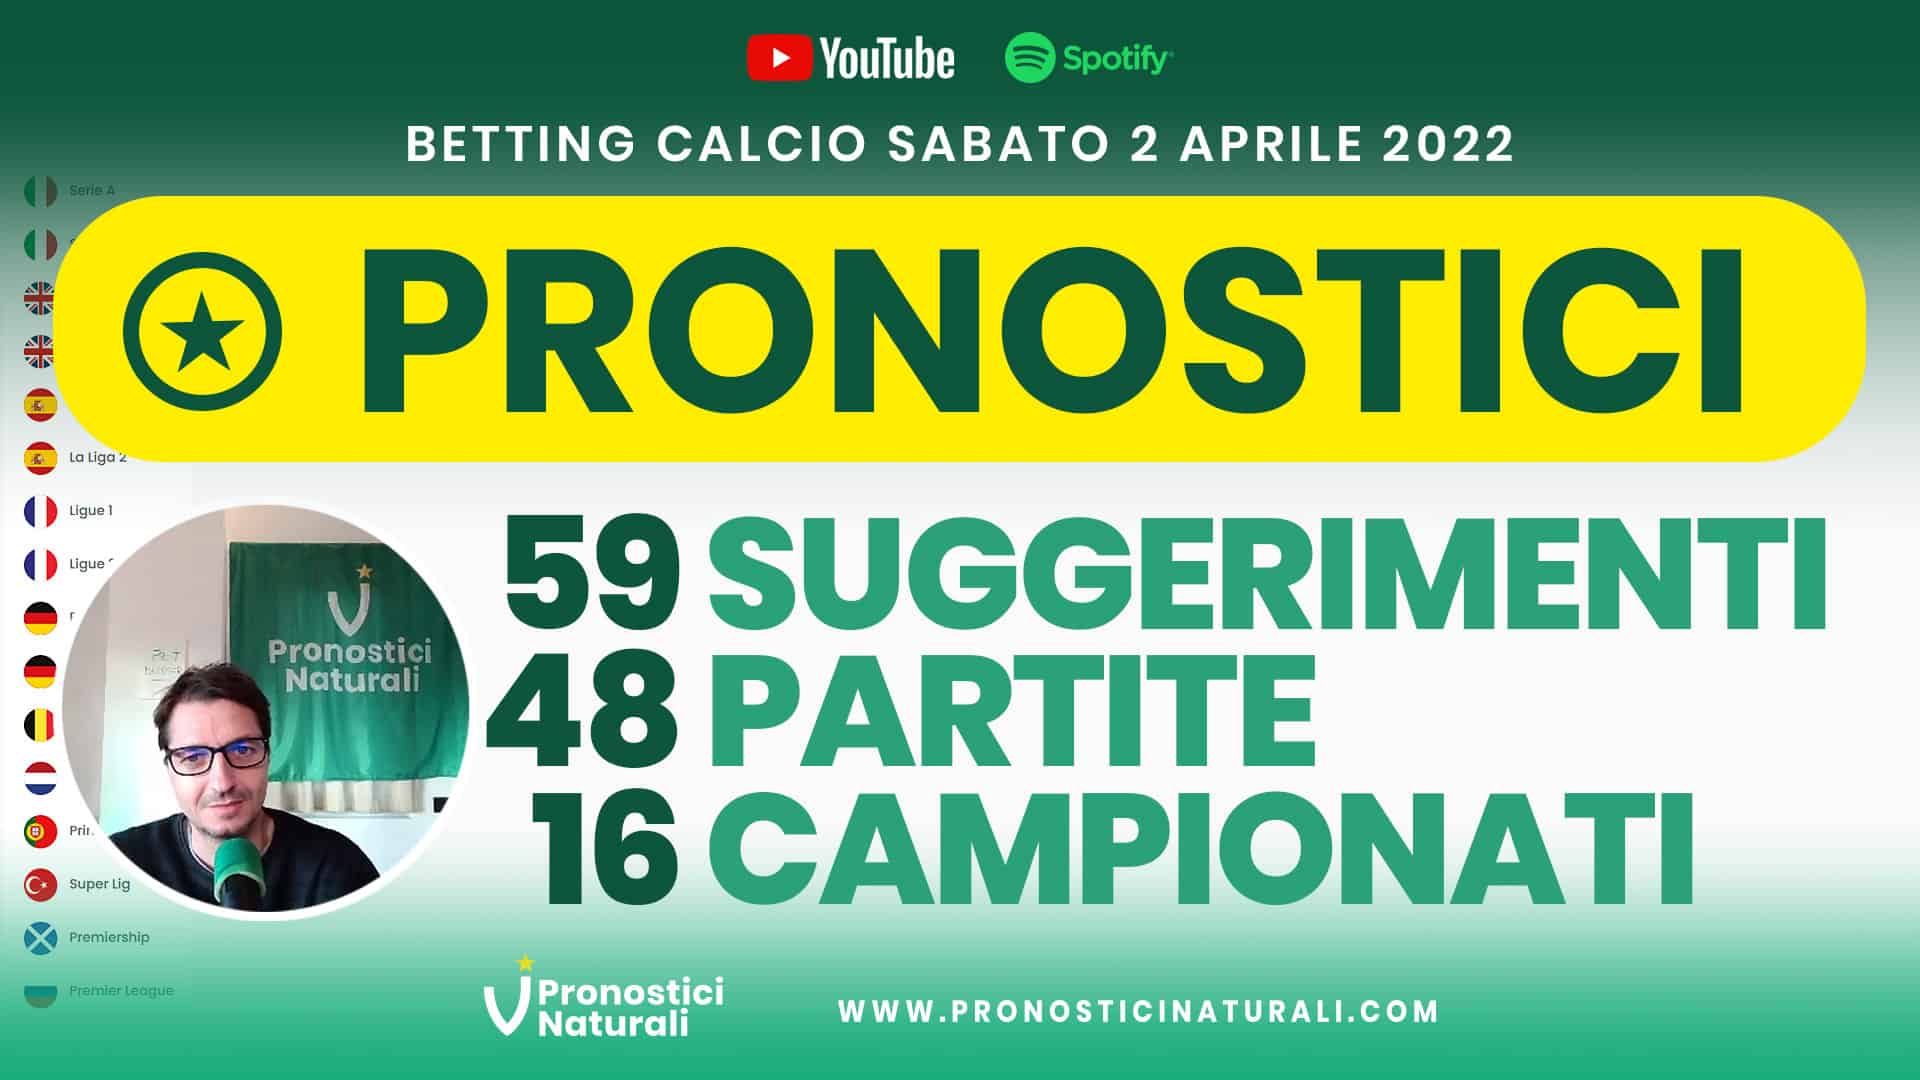 Pronostici Naturali Video Analisi Scommesse Betting Calcio Analisi Pre Partite Sabato 2 Aprile 2022